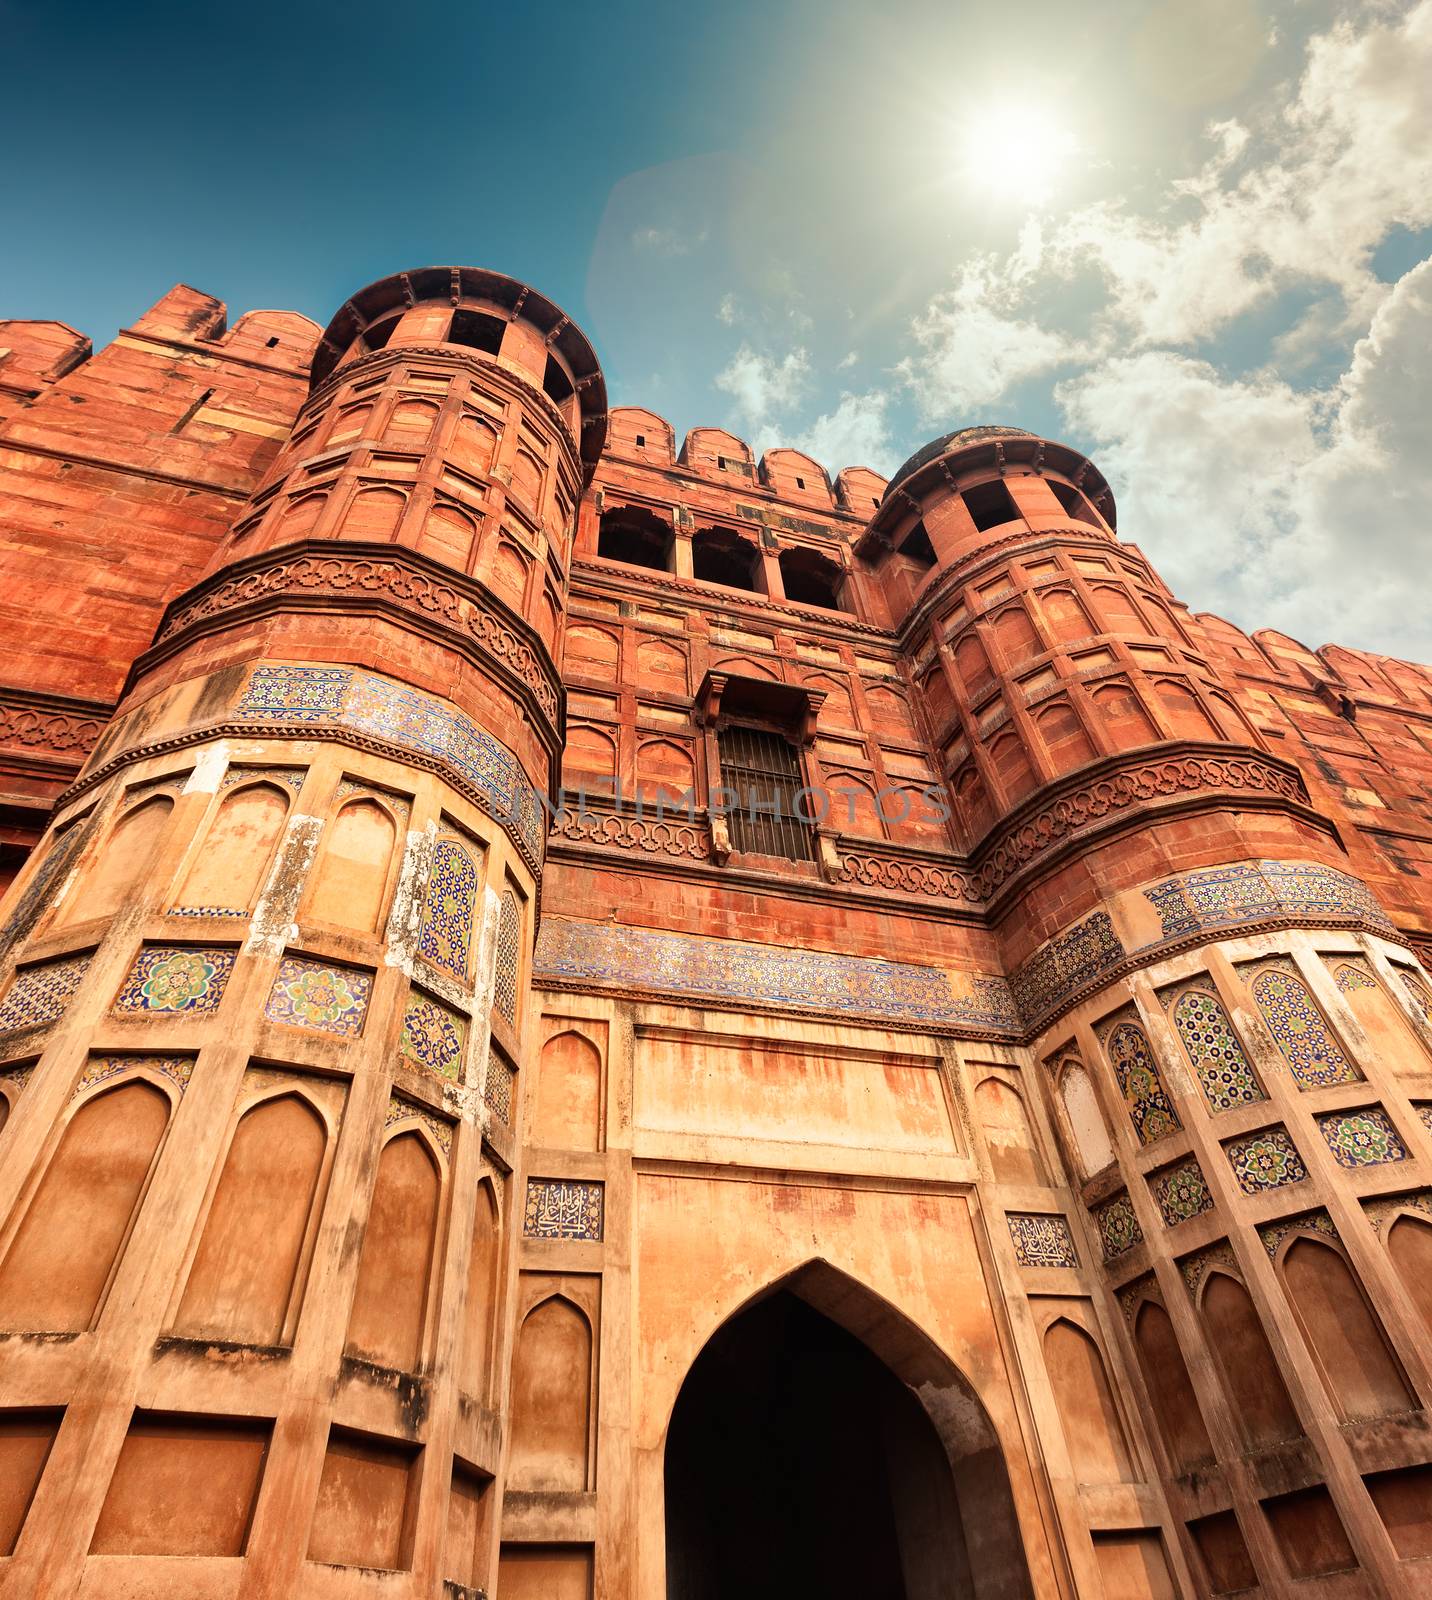 Agra Fort, Agra, Uttar Pradesh, India, Asia by vladimir_sklyarov